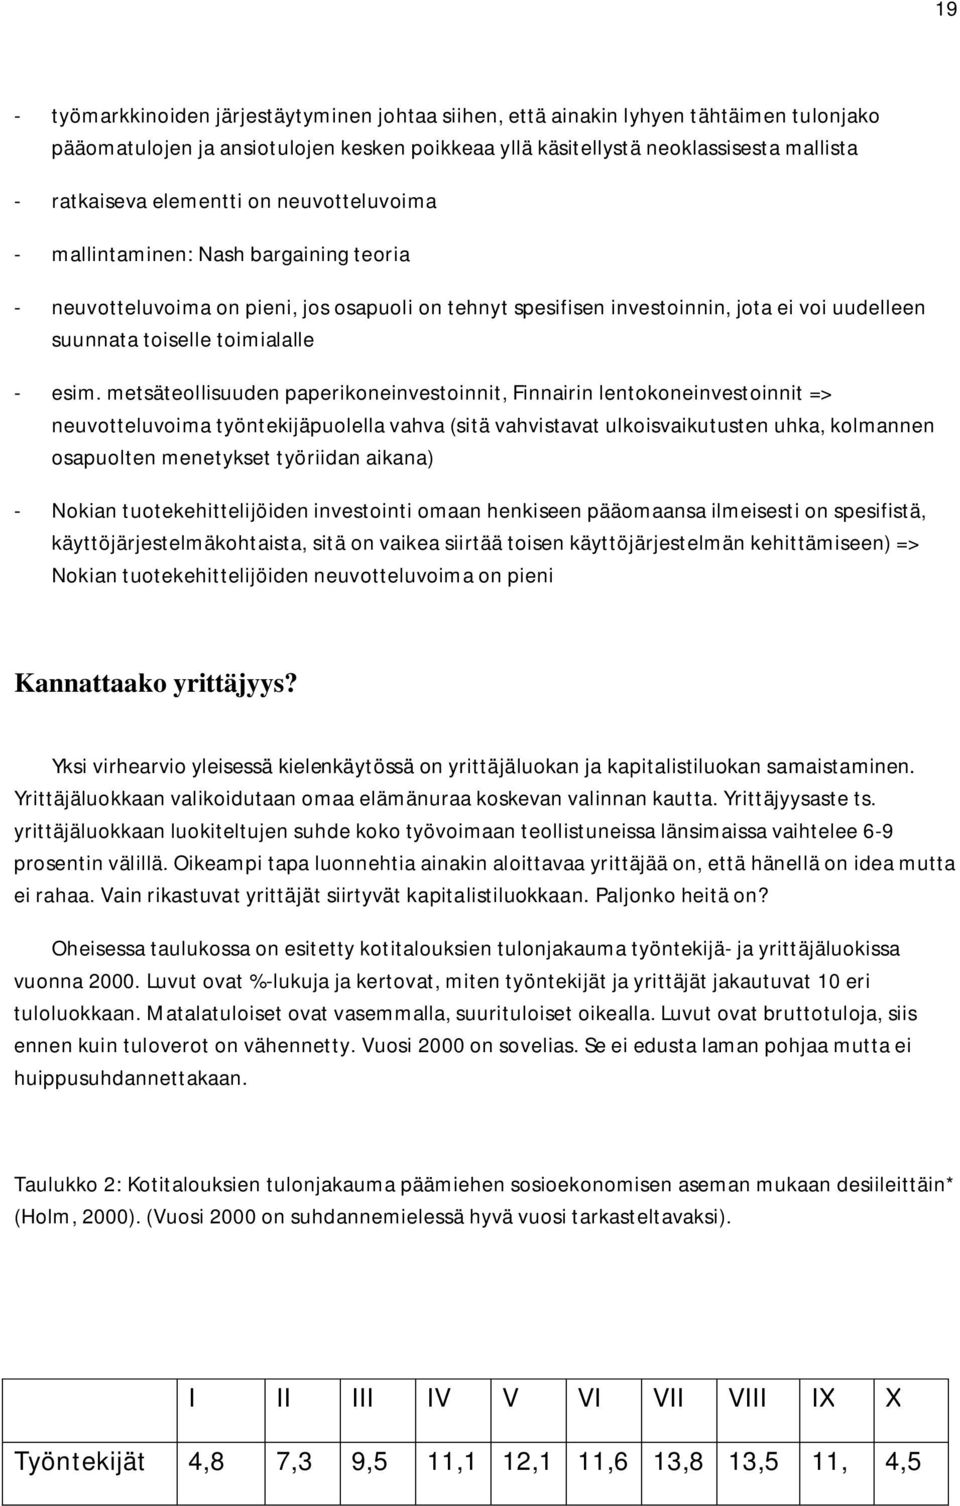 esim. metsäteollisuuden paperikoneinvestoinnit, Finnairin lentokoneinvestoinnit => neuvotteluvoima työntekijäpuolella vahva (sitä vahvistavat ulkoisvaikutusten uhka, kolmannen osapuolten menetykset